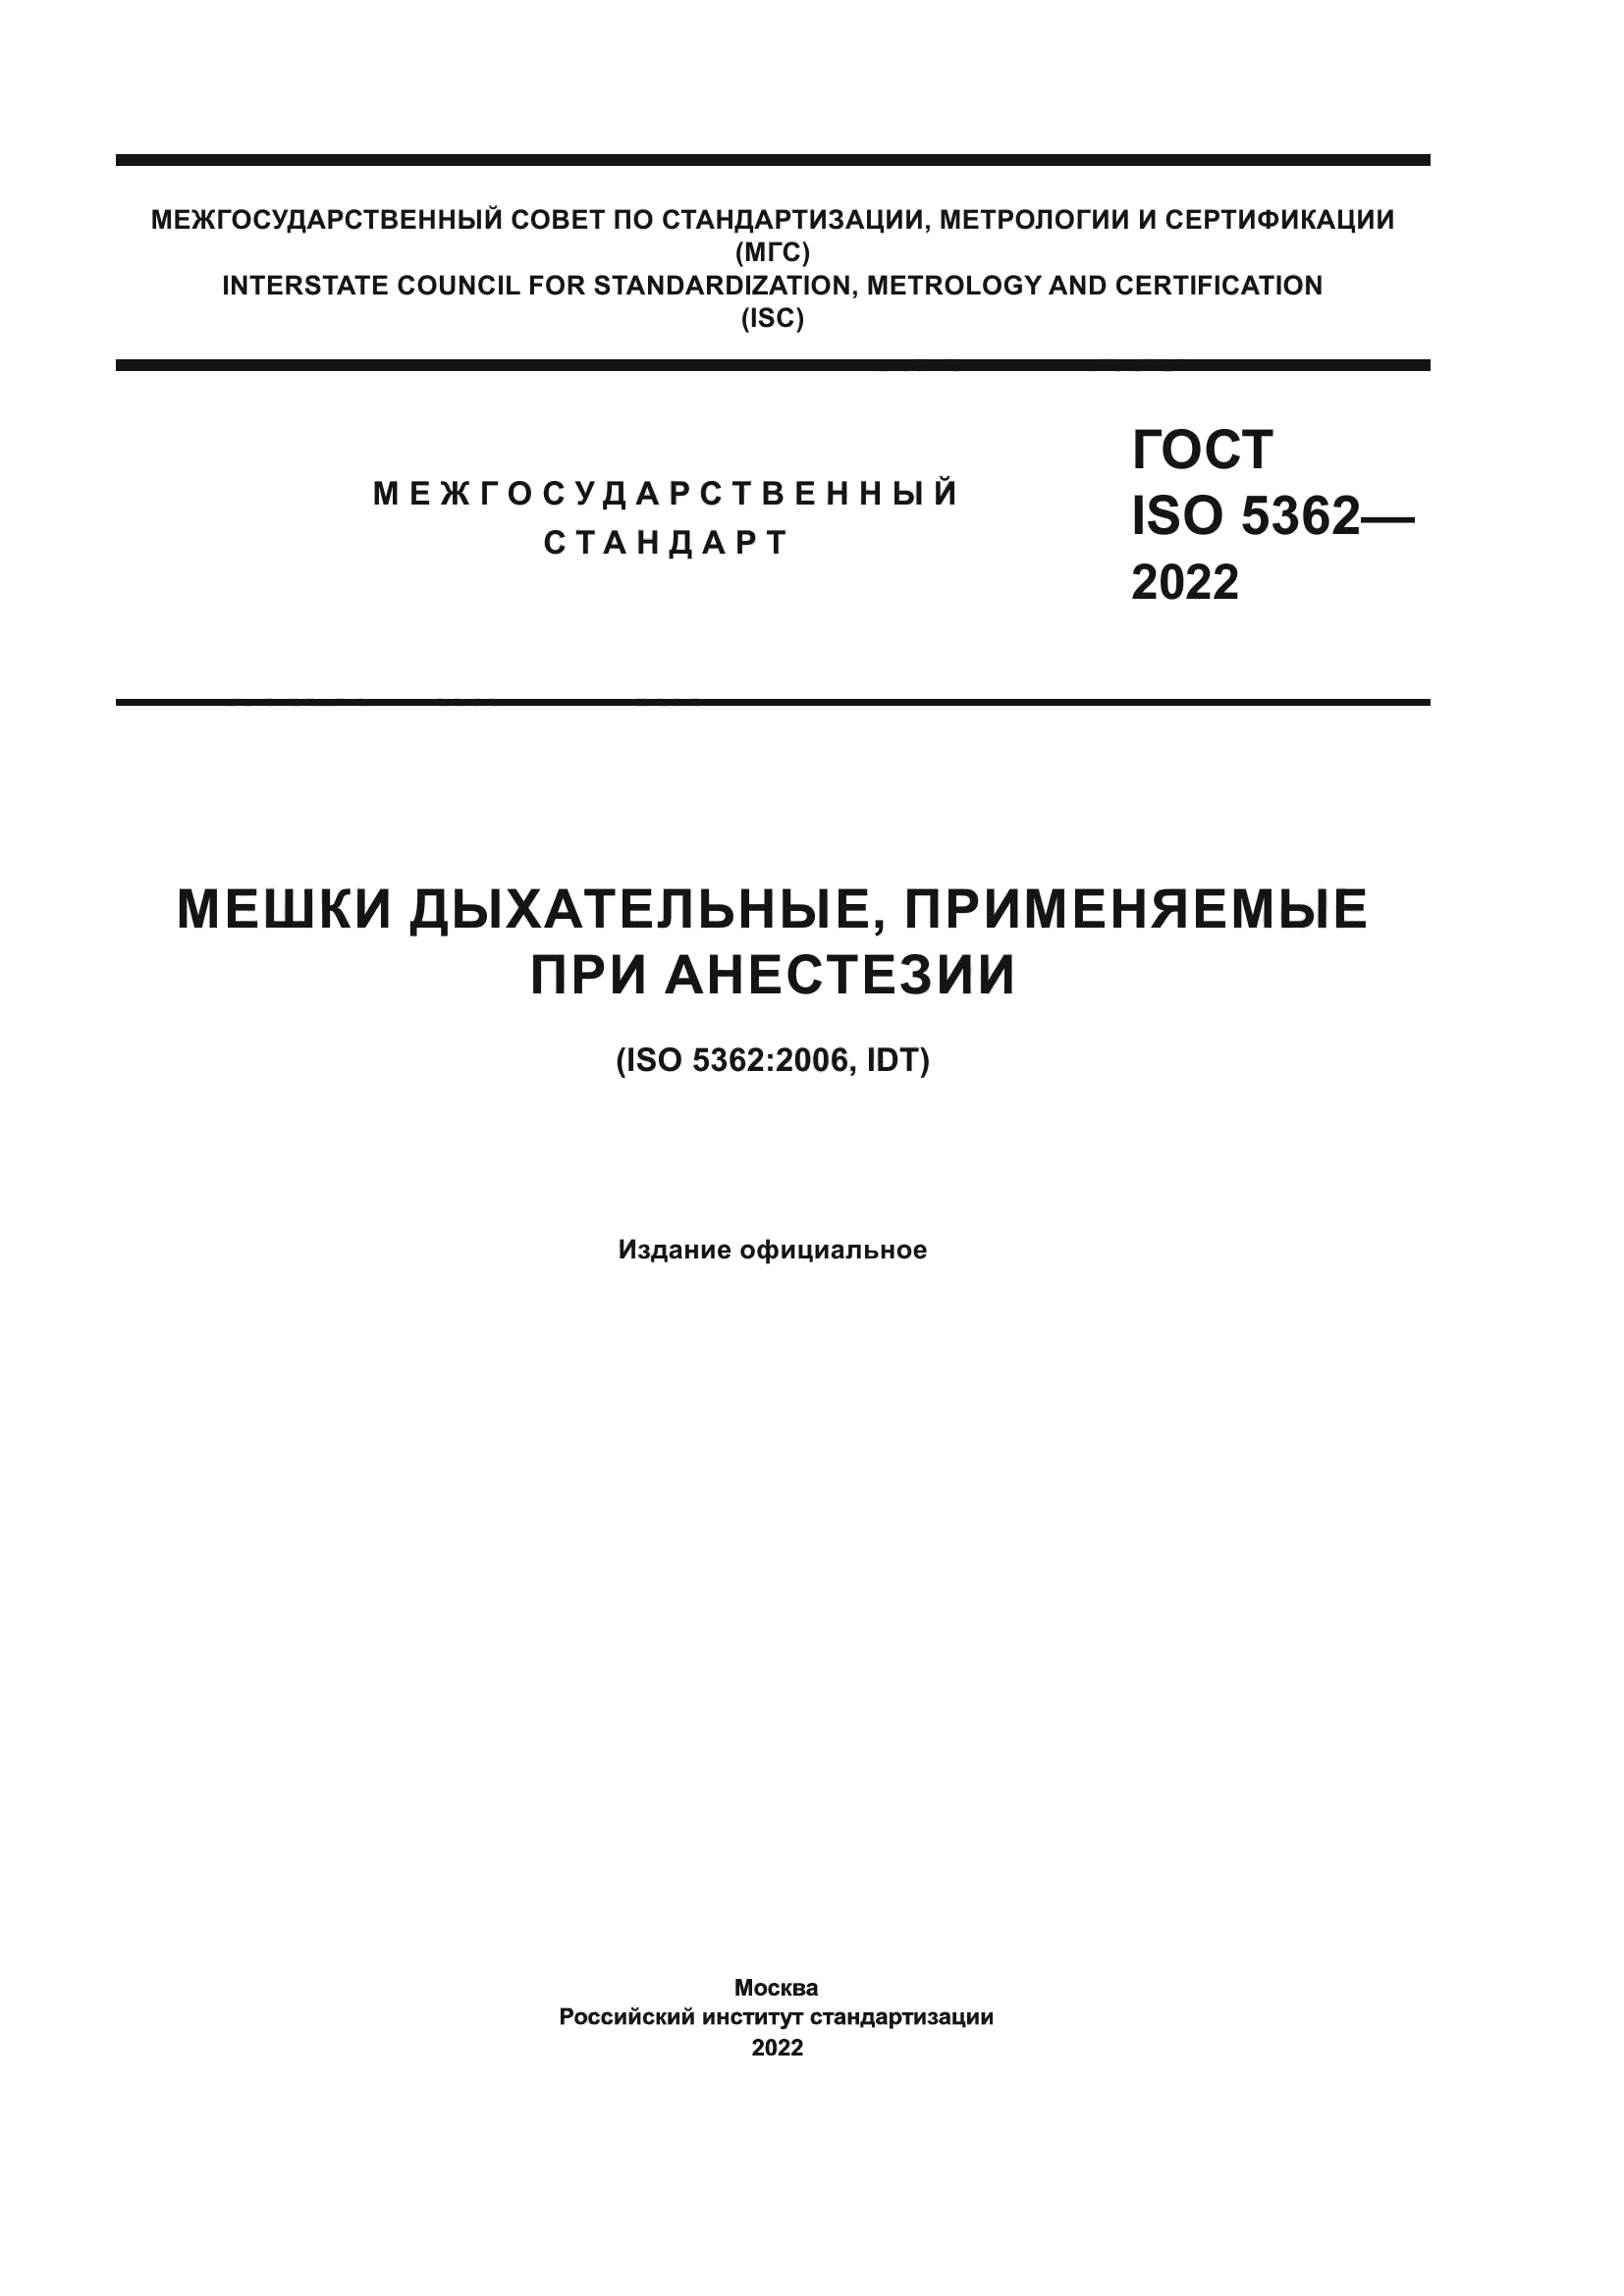 ГОСТ ISO 5362-2022